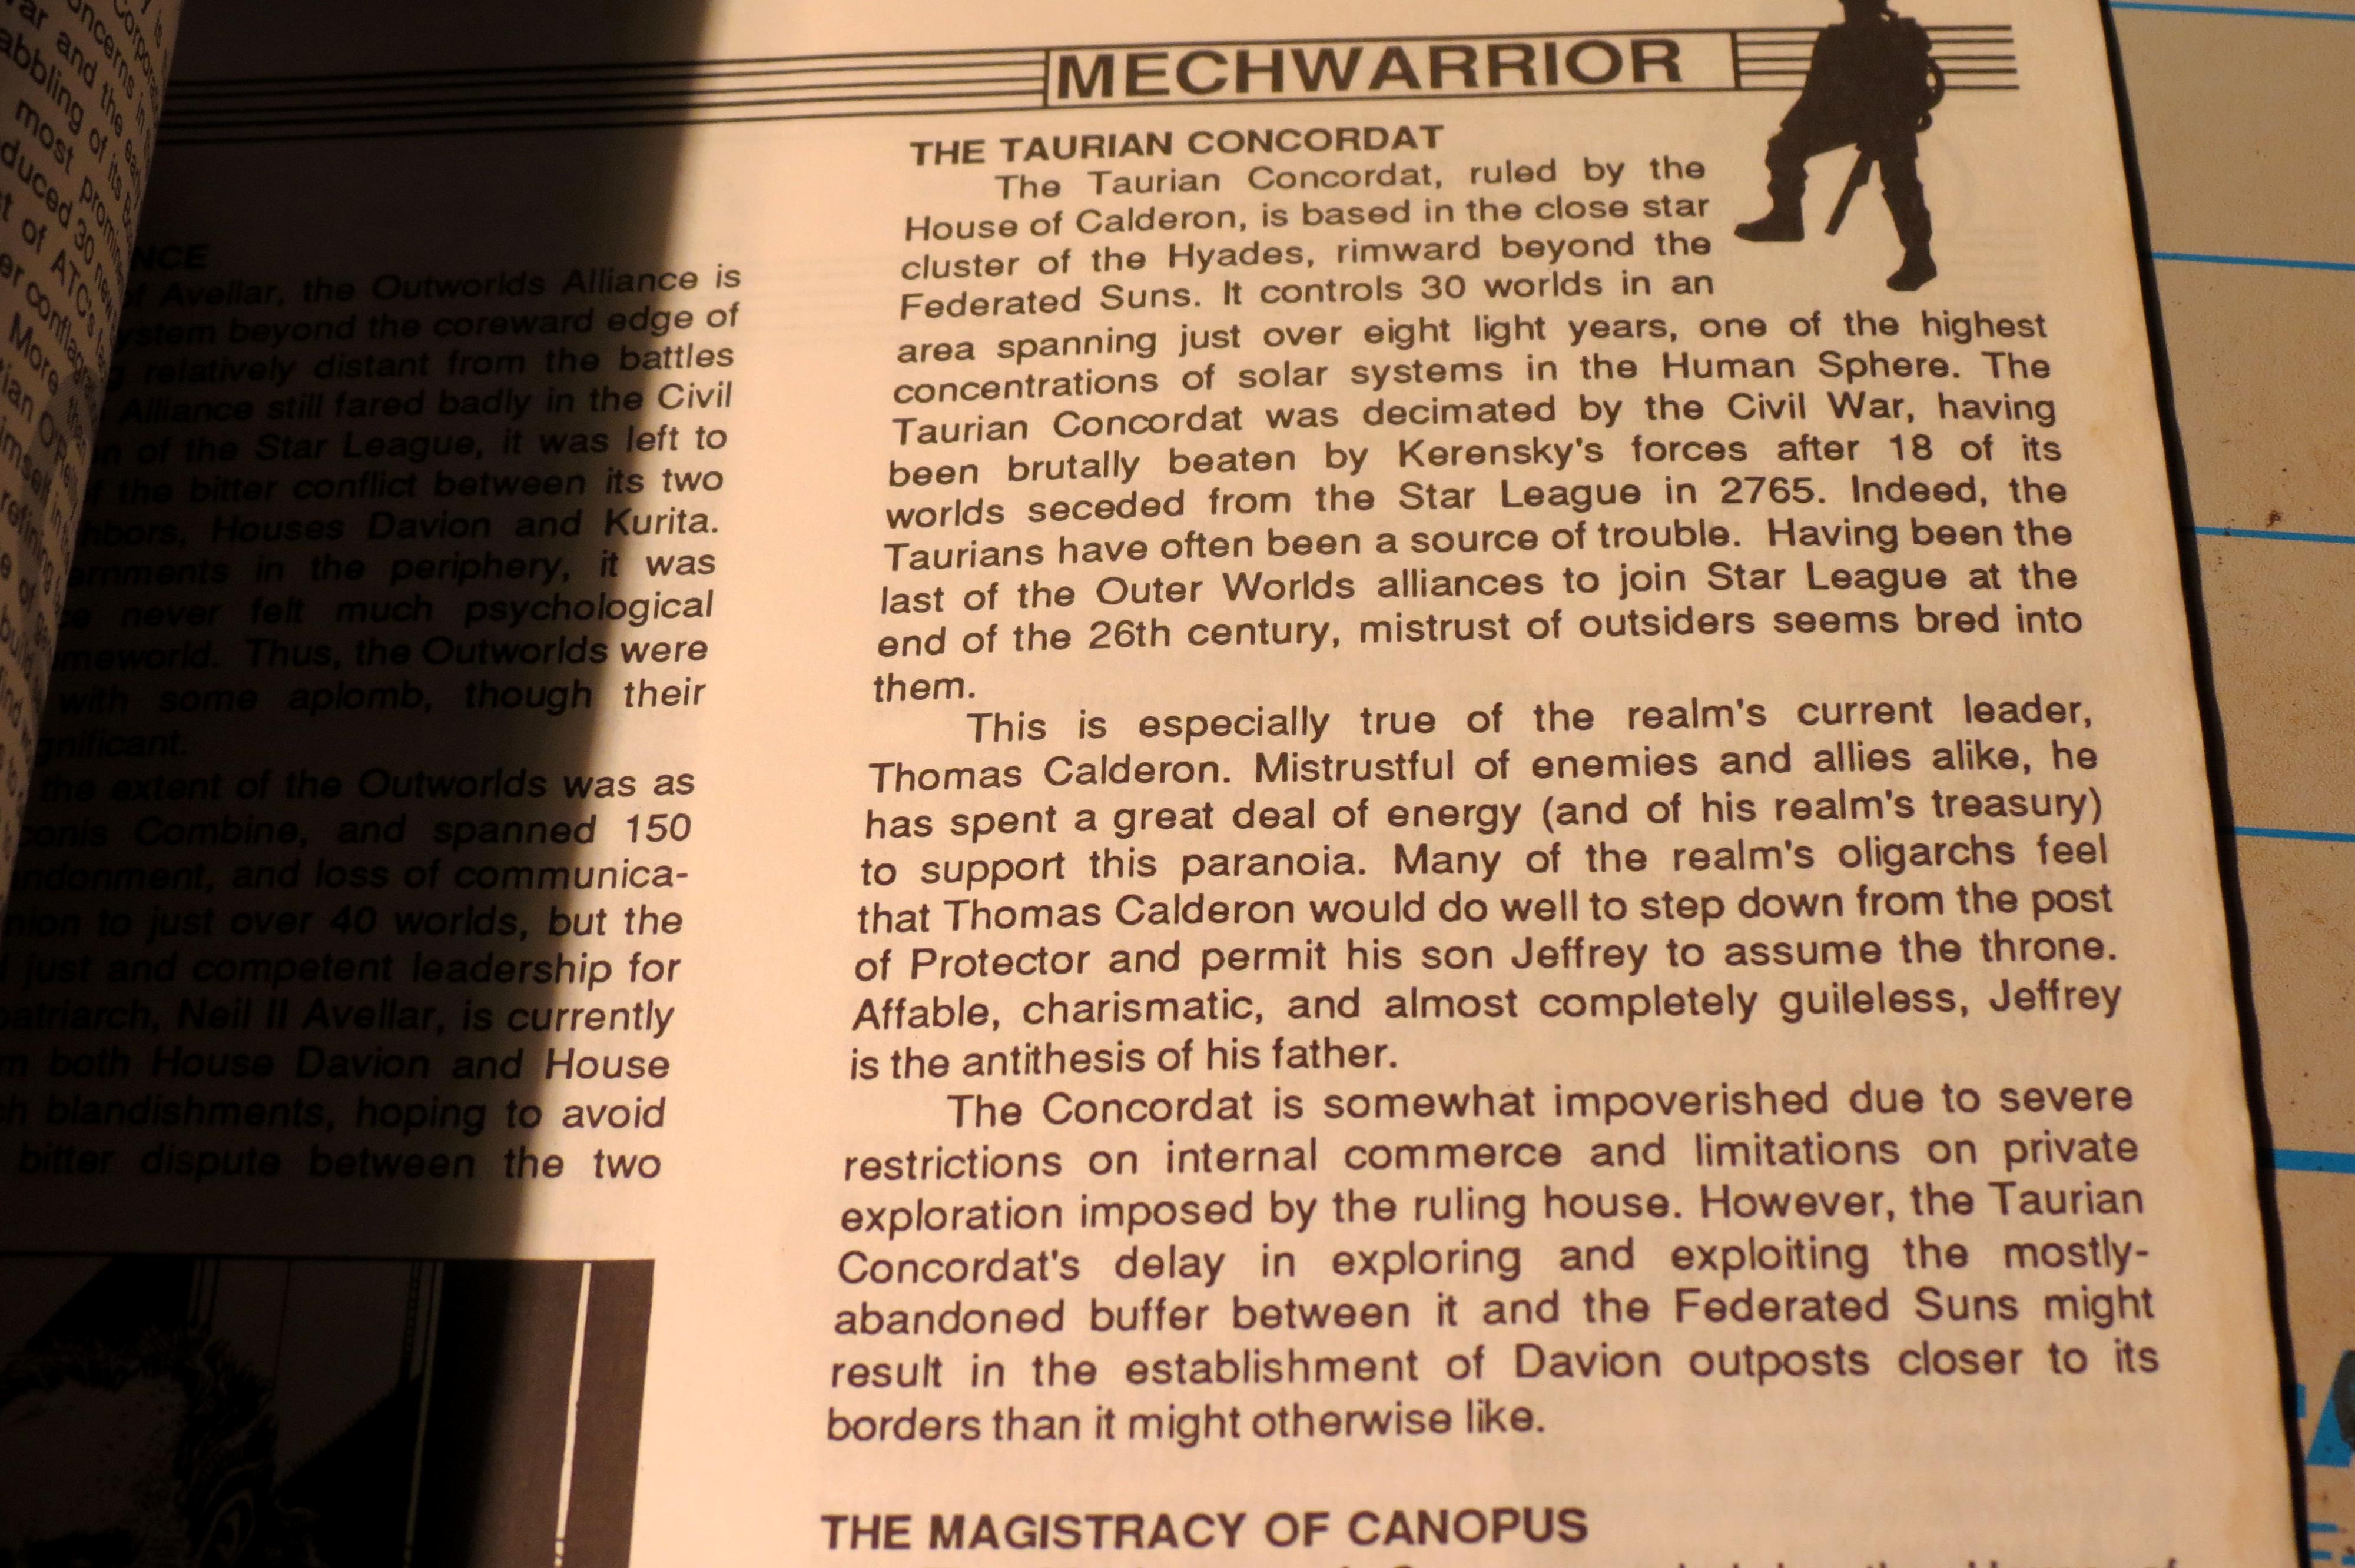 Mechwarrior pg 137